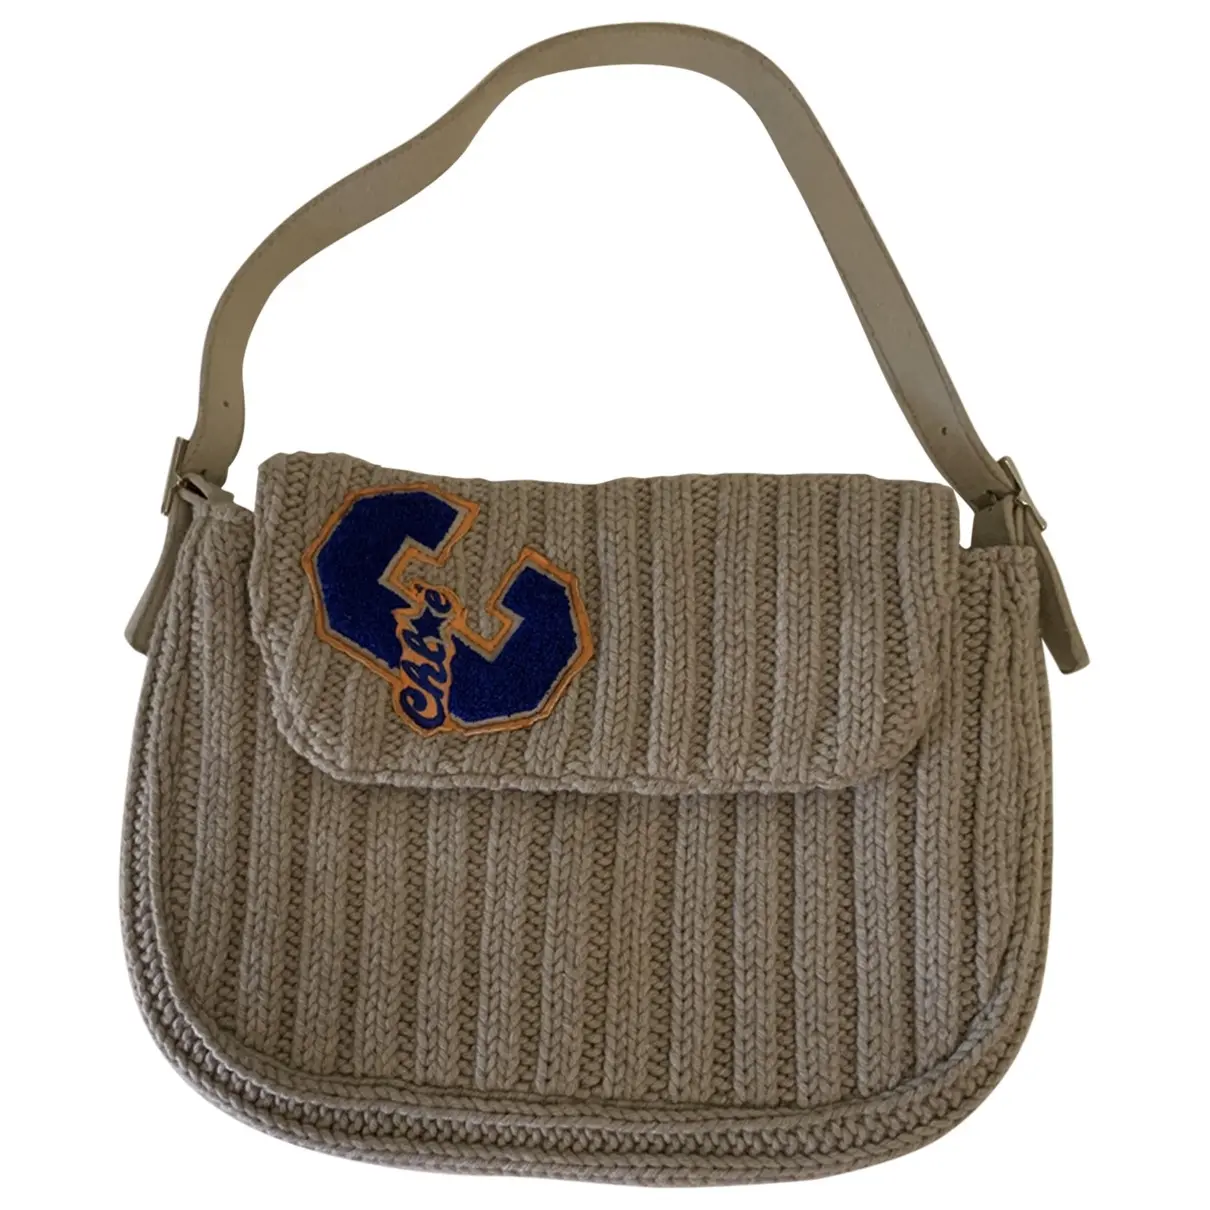 Wool handbag Chloé